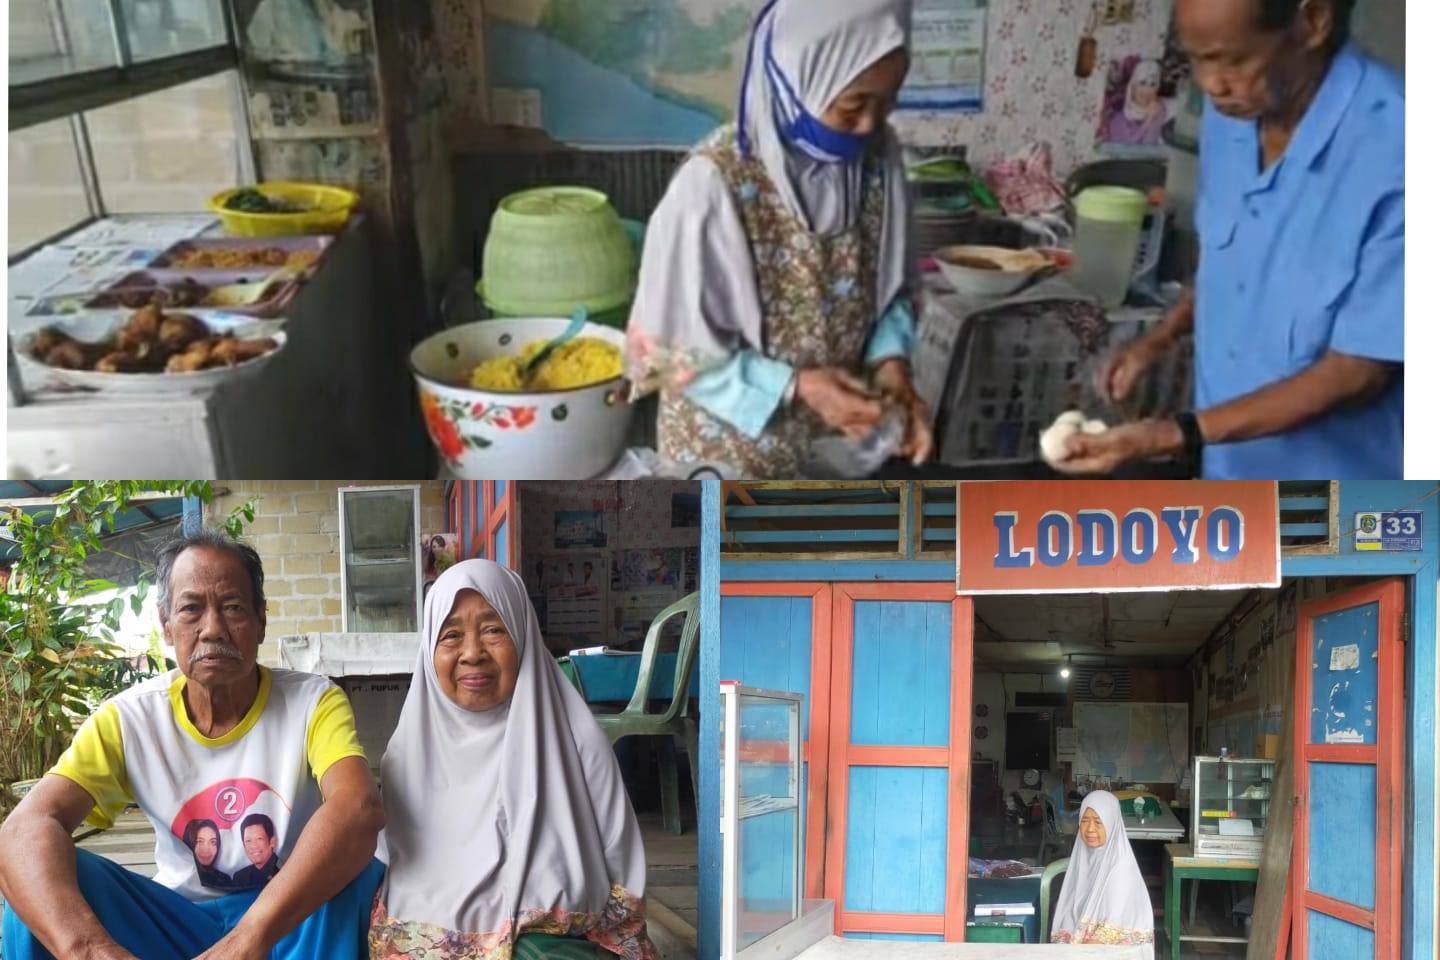 Naik Haji dari Jualan Nasi Kuning Lodoyo, Sehari Habiskan 35 Kg Beras